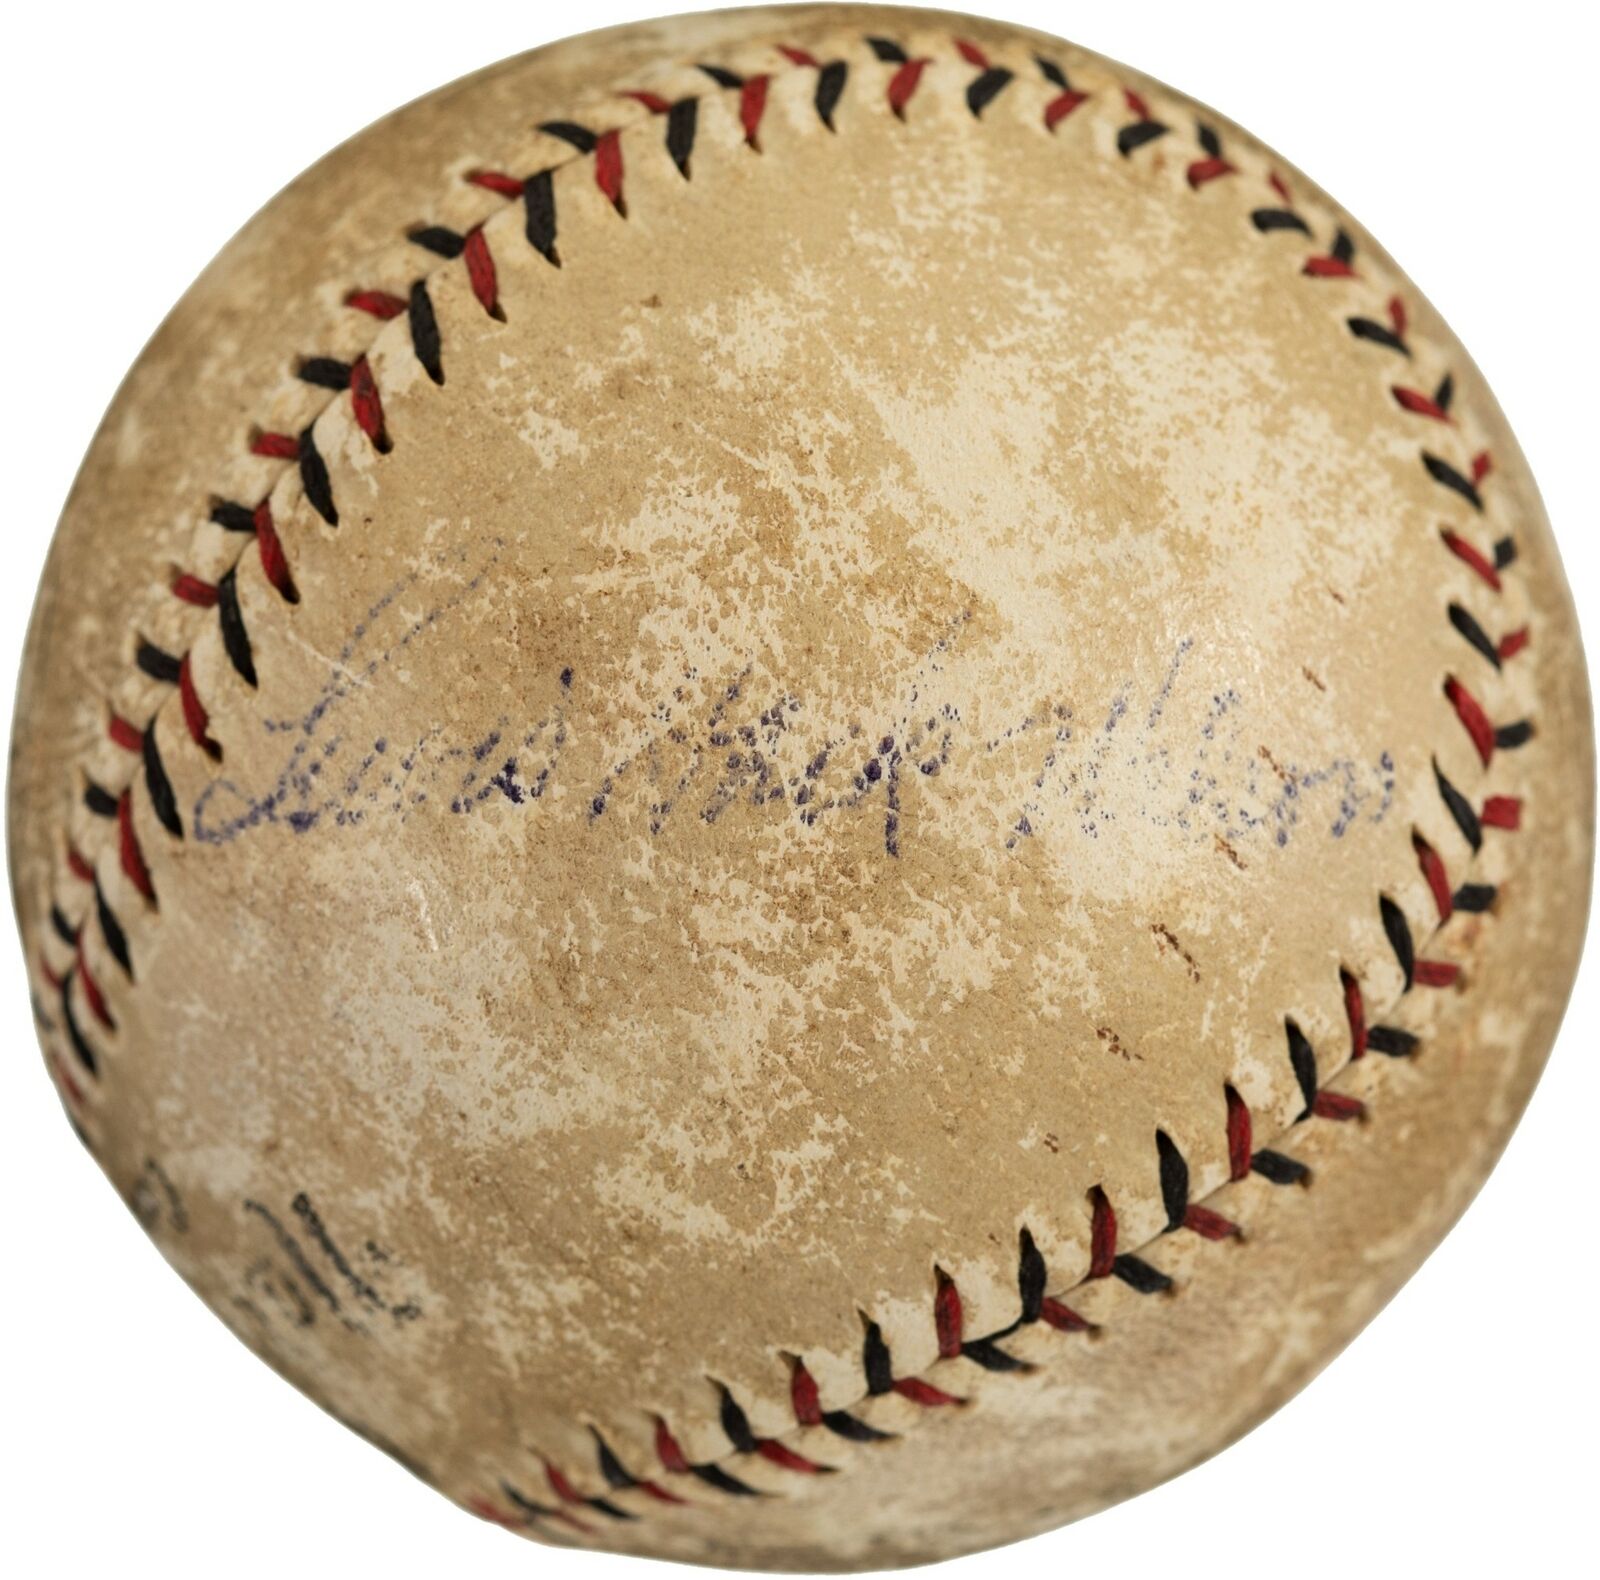 Rare Hack Wilson Single Signed 1930 National League Baseball PSA DNA & JSA COA